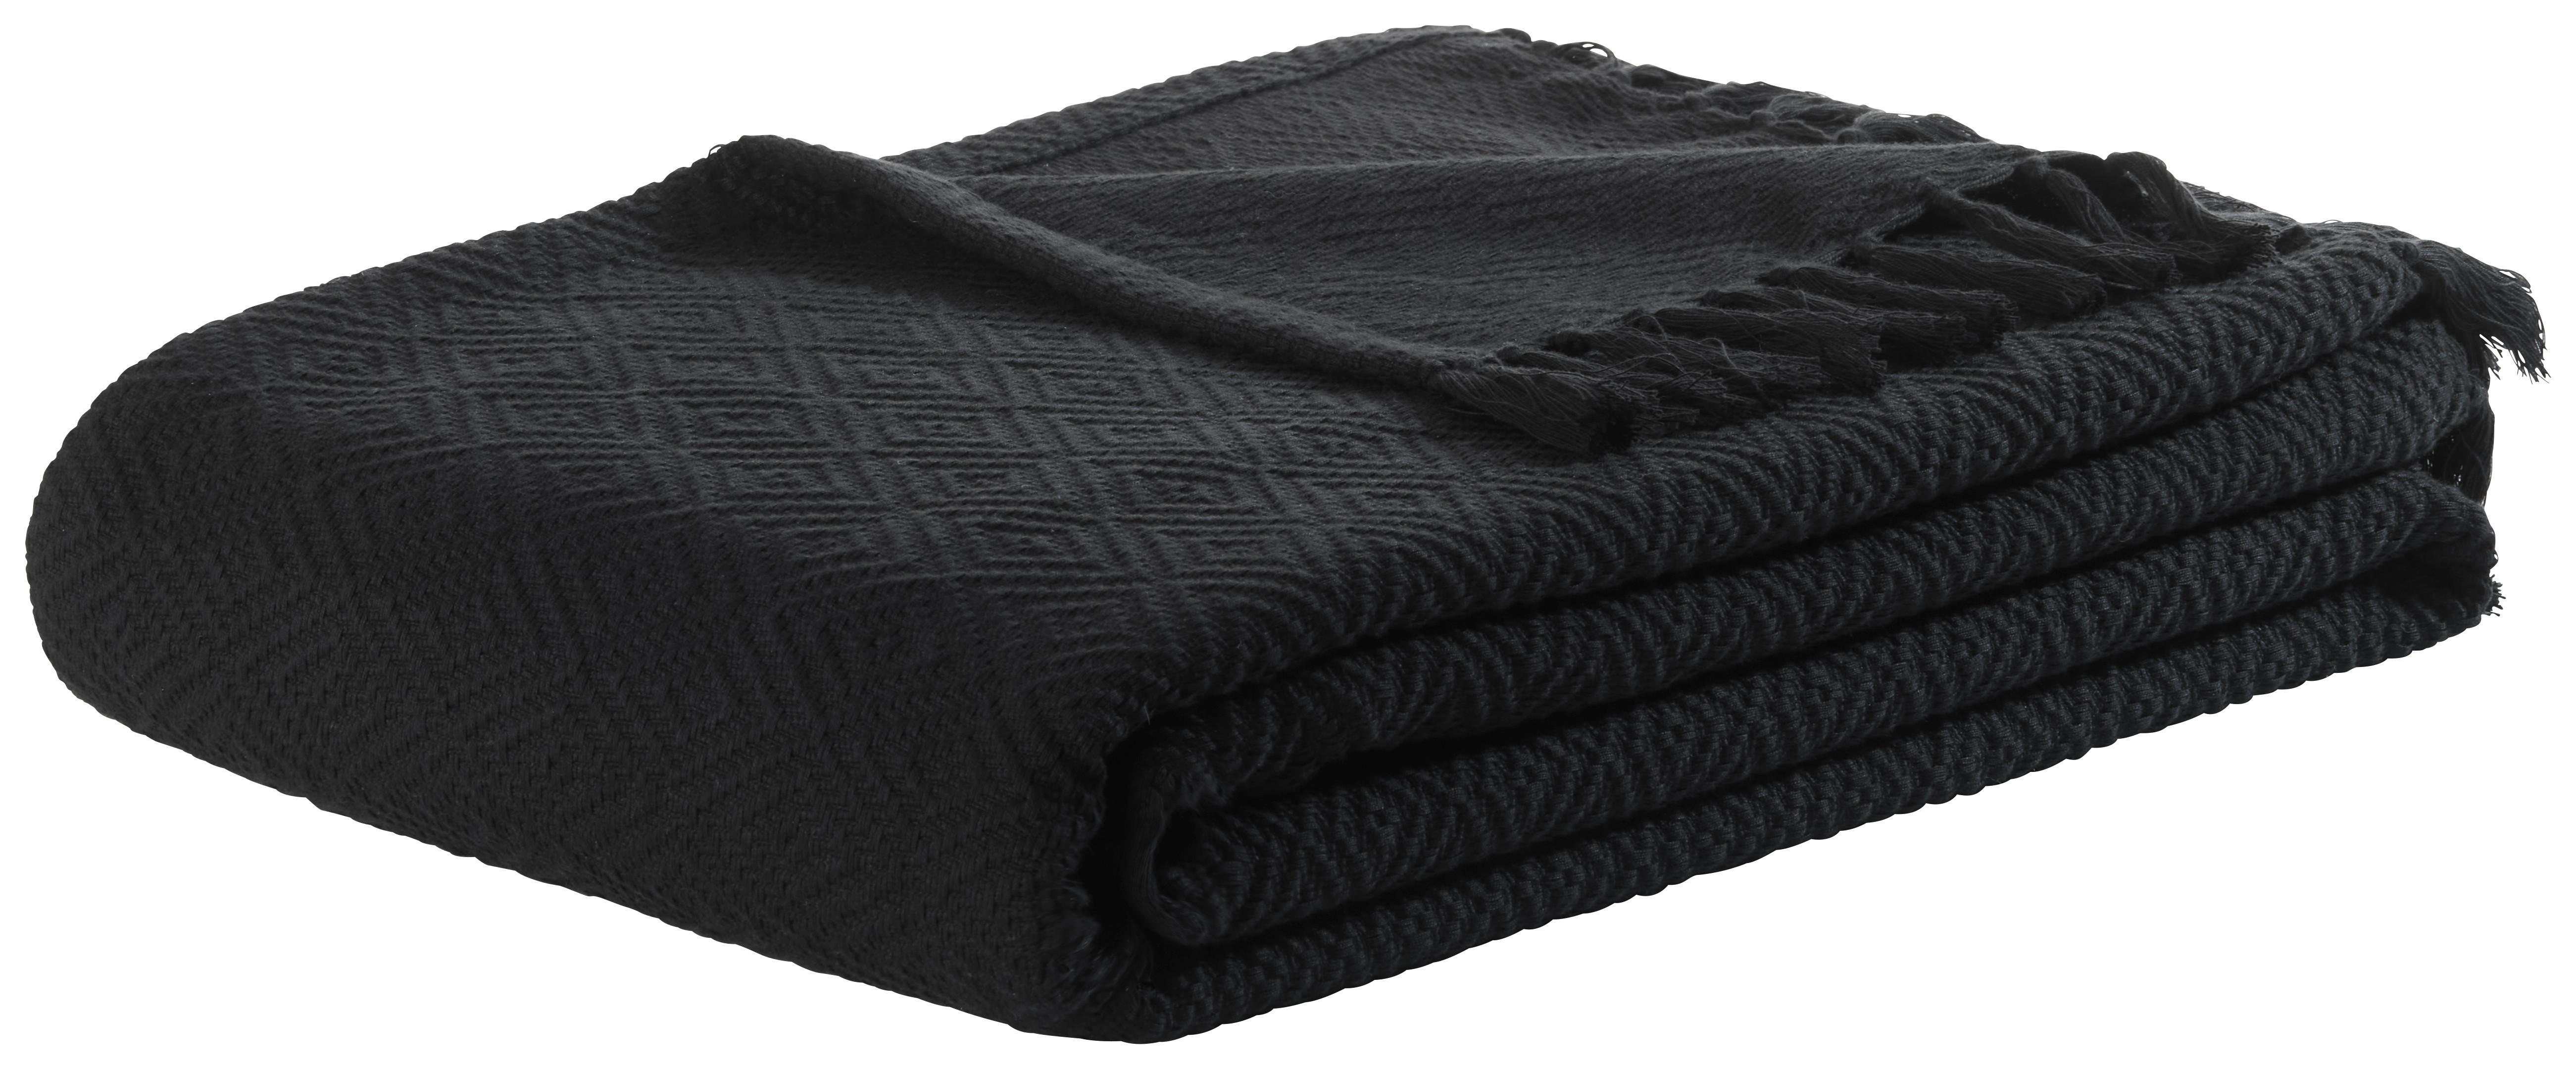 Denní Deka Frieda, 130/180cm, Černá - černá, Lifestyle, textil (130/180cm) - Modern Living